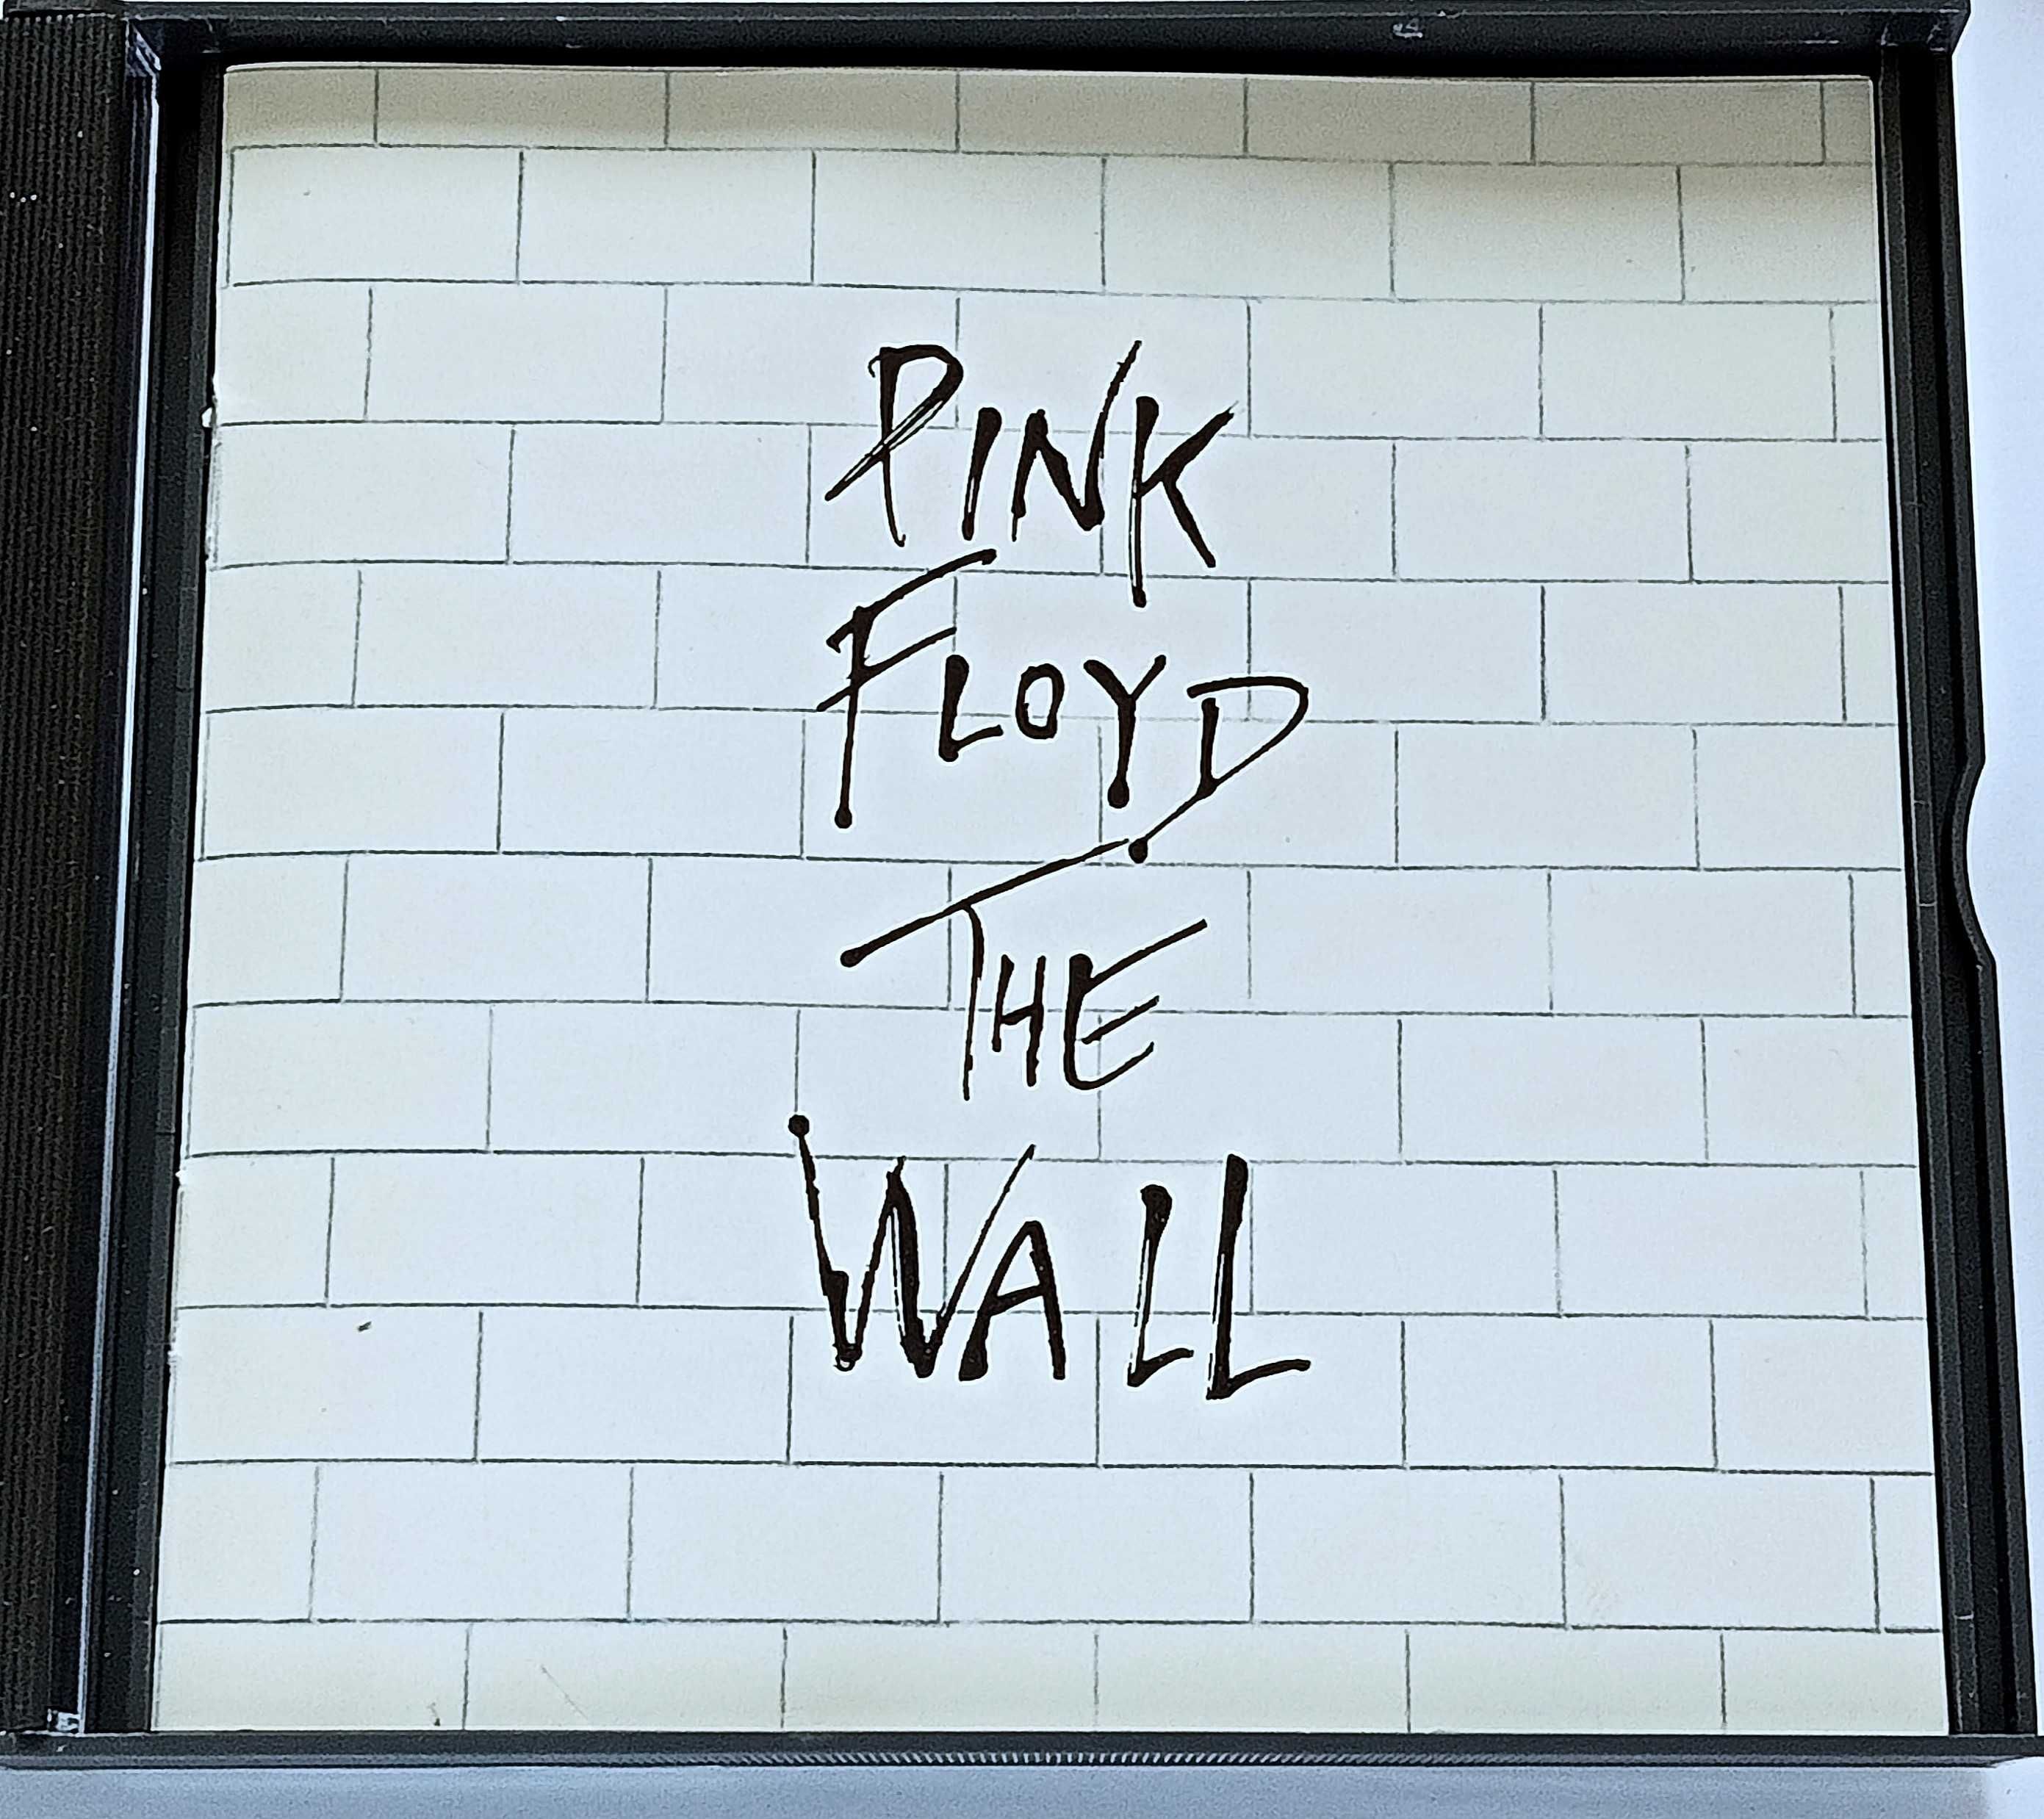 Pink Floyd – The Wall 2CD 1979 stare wydanie brytyjskie!